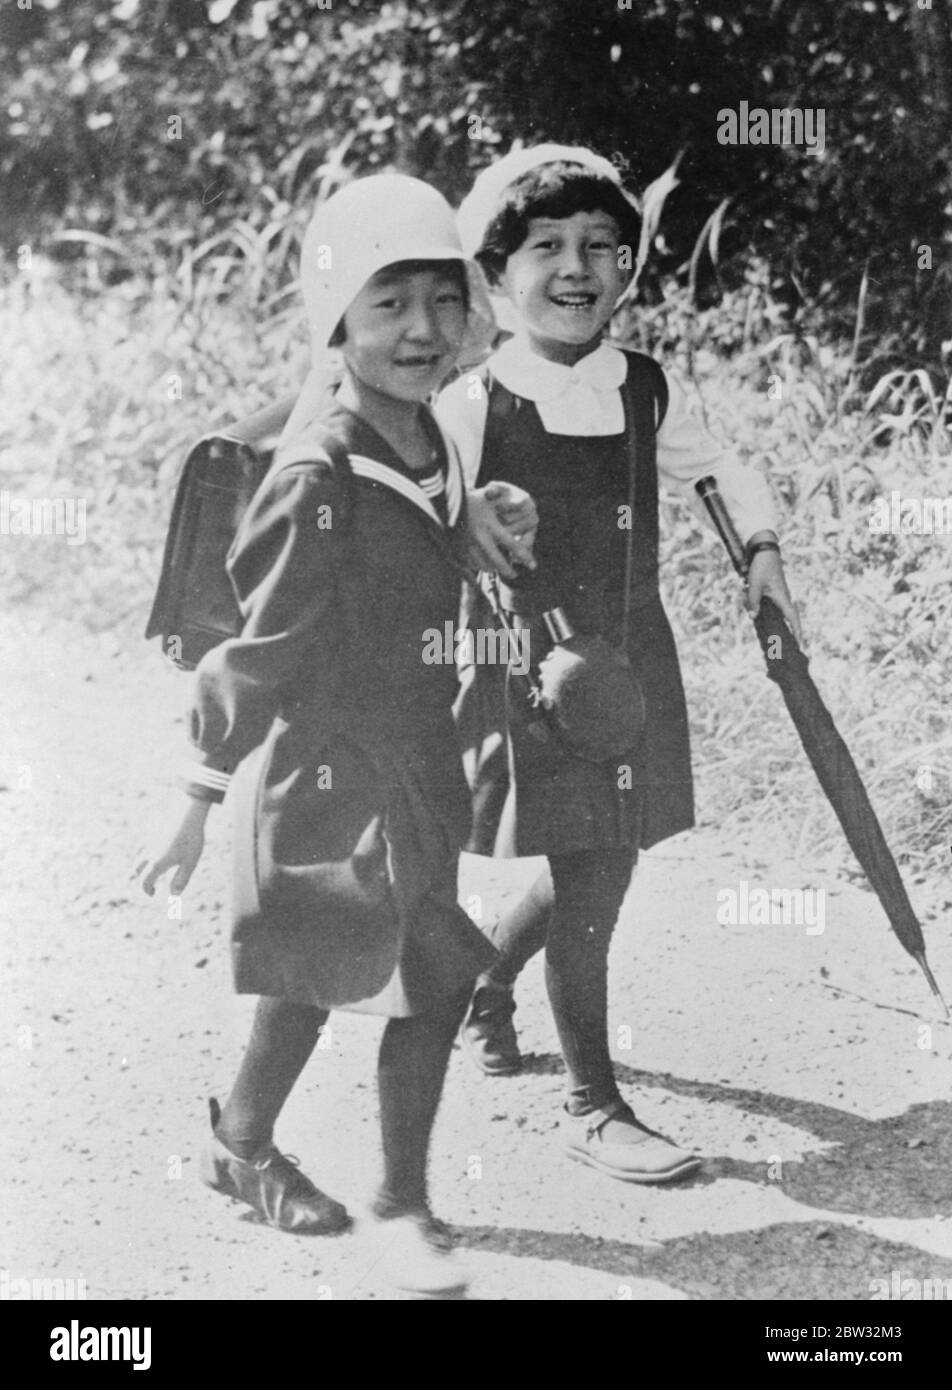 Japan ' s Prinzessin geht wandern. Prinzessin Teru, die älteste Tochter des Kaisers und Kaiserin von Japan, die eine Schülerin der Peeress' s Schule in der Nähe von Tokio ist, nimmt Unterricht und Bewegung mit ihren Schulkameraden ohne Rücksicht auf ihren königlichen Rang, und trägt Schuluniform. Prinzessin Teru ( links ) Spaziergang zusammen mit einem Schulfreund während einer Kastaniensammler Spaziergang . November 1932 Stockfoto